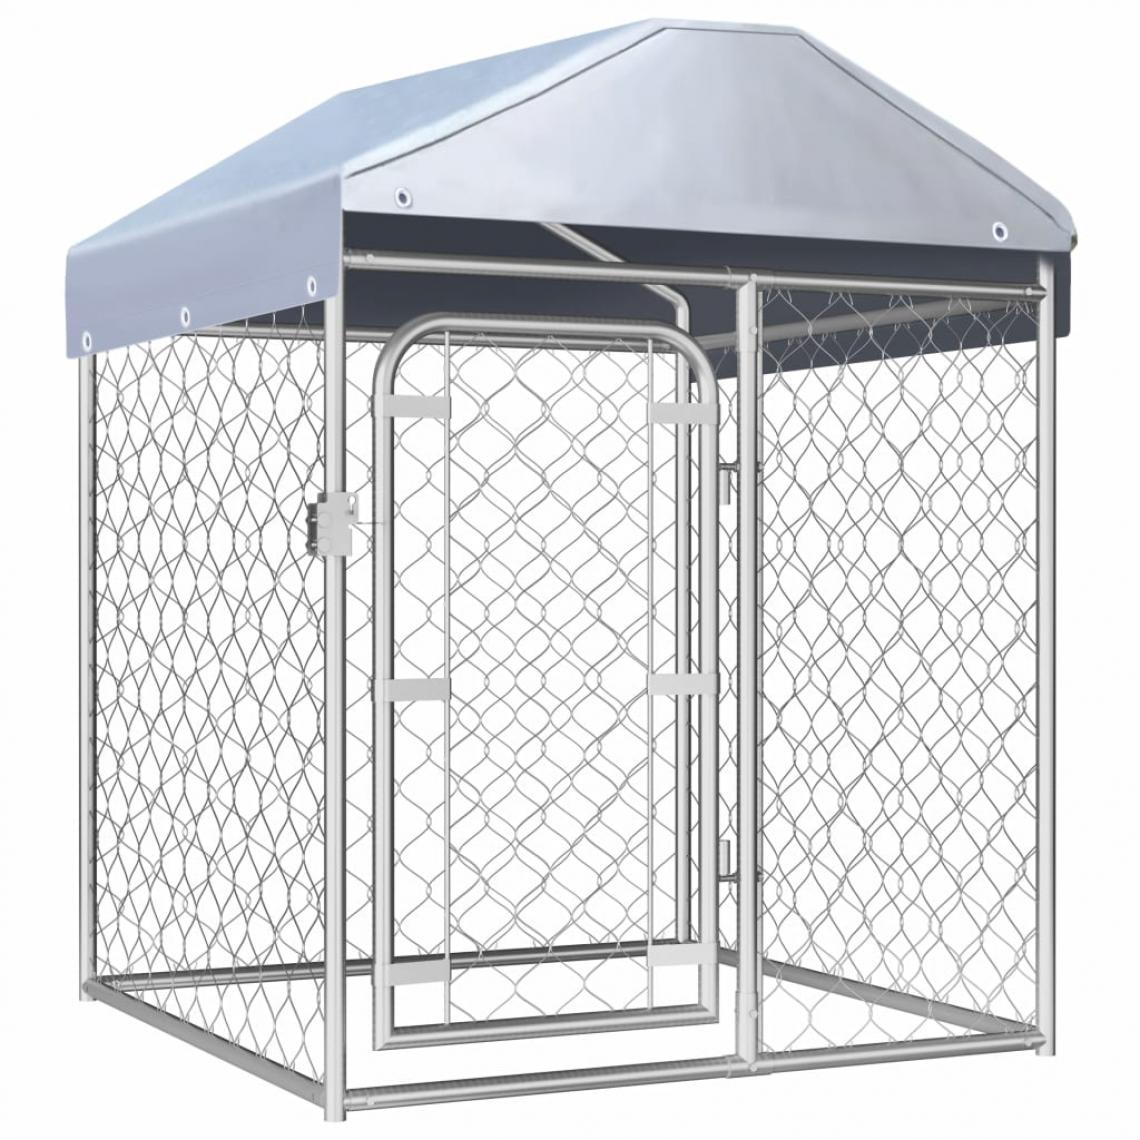 Helloshop26 - Chenil extérieur cage enclos parc animaux chien extérieur avec toit 100 x 100 x 125 cm 02_0000448 - Clôture pour chien